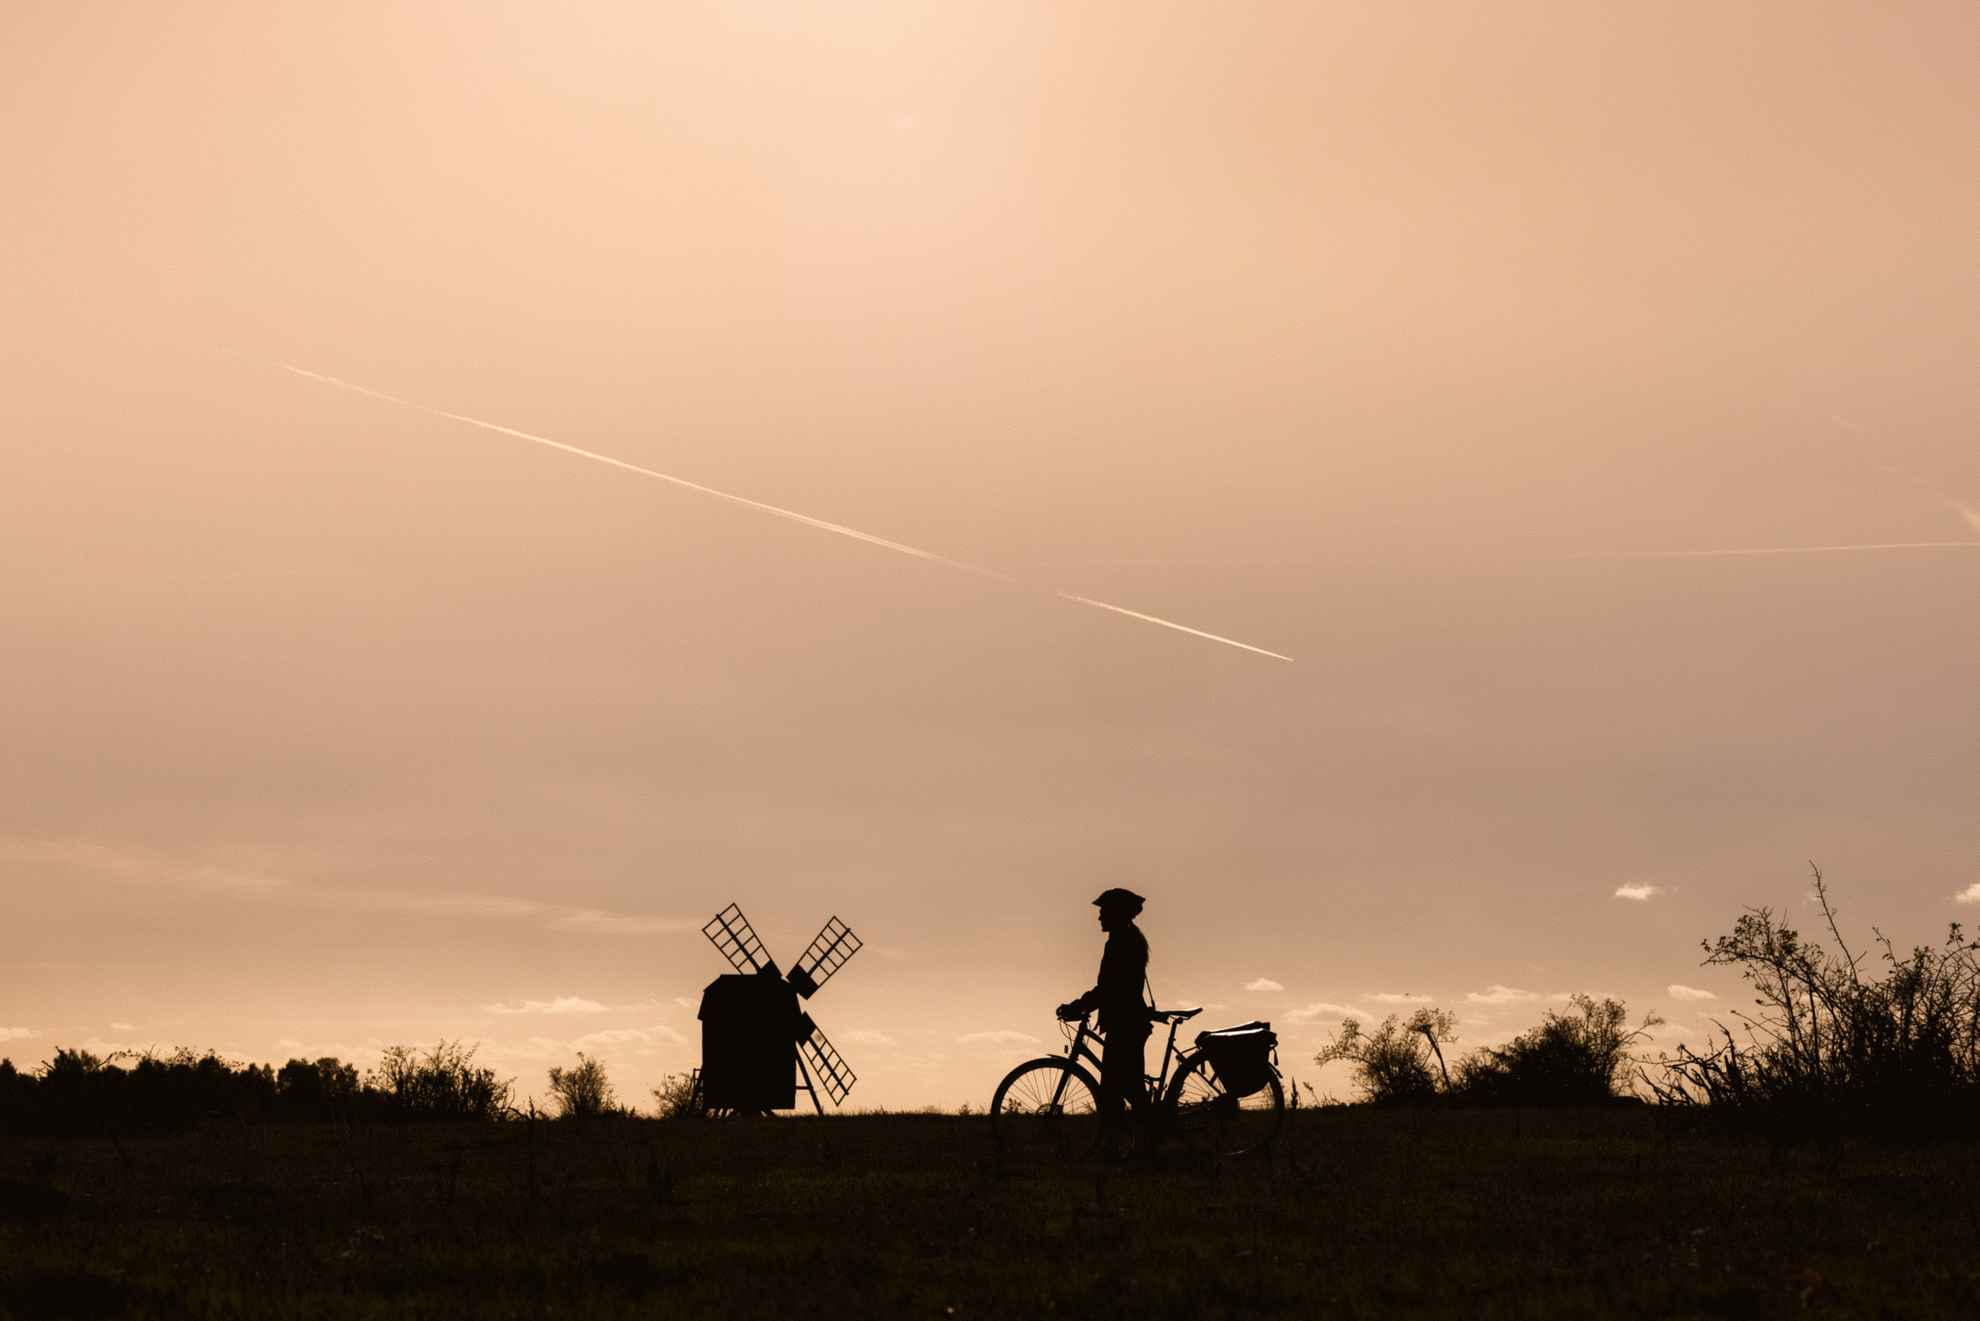 On voit sur la photo la silhouette d'un cycliste au crépuscule avec un moulin à vent en arrière-plan